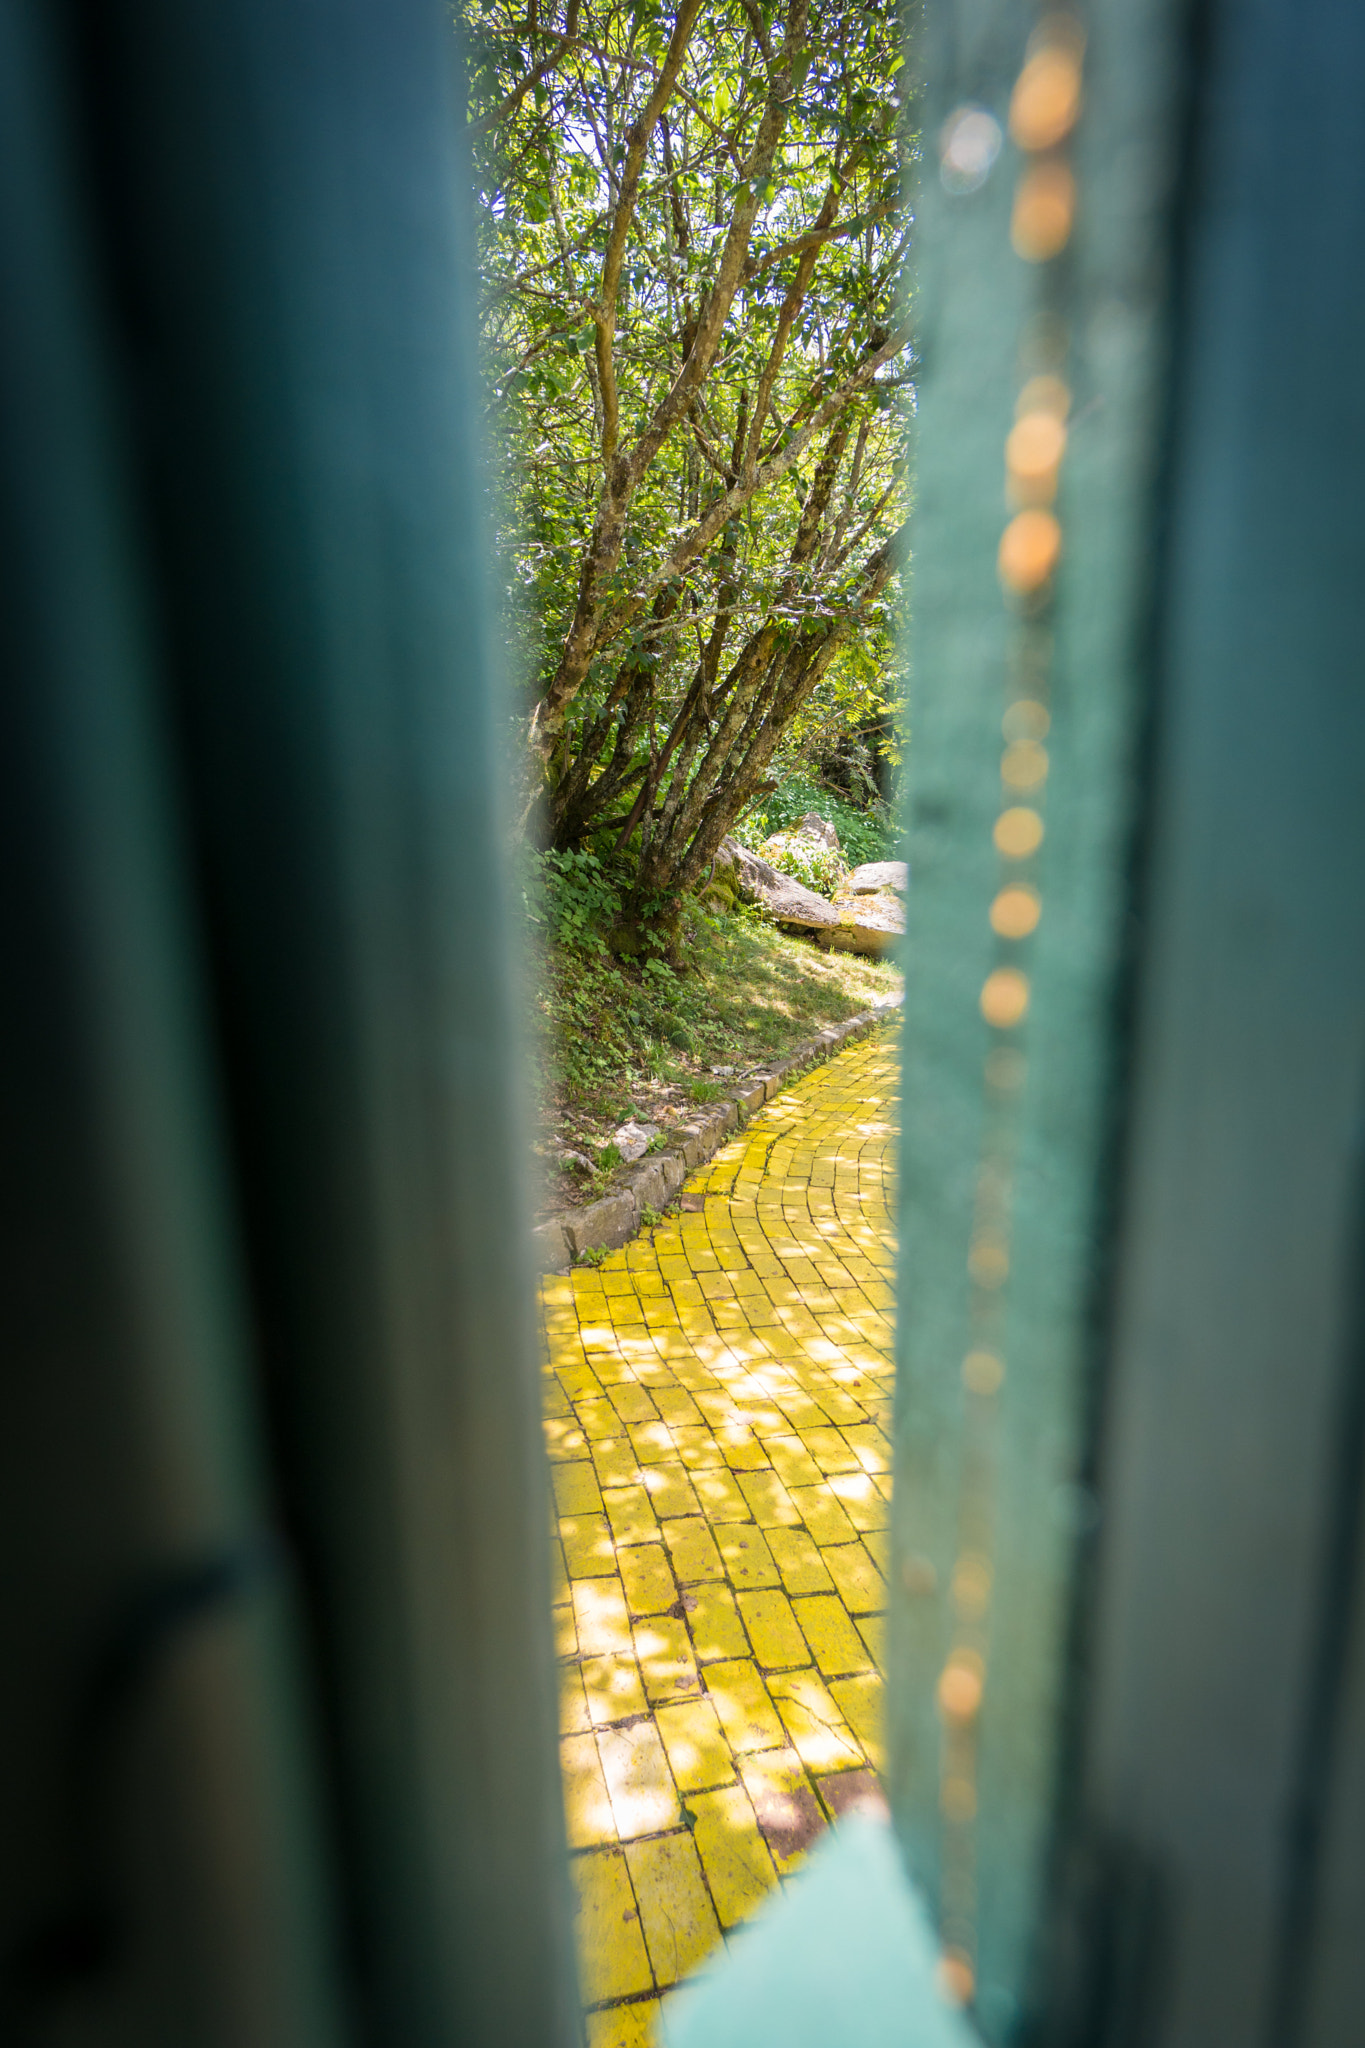 Sony a6300 sample photo. "hidden yellow brick road" #photojambo photography